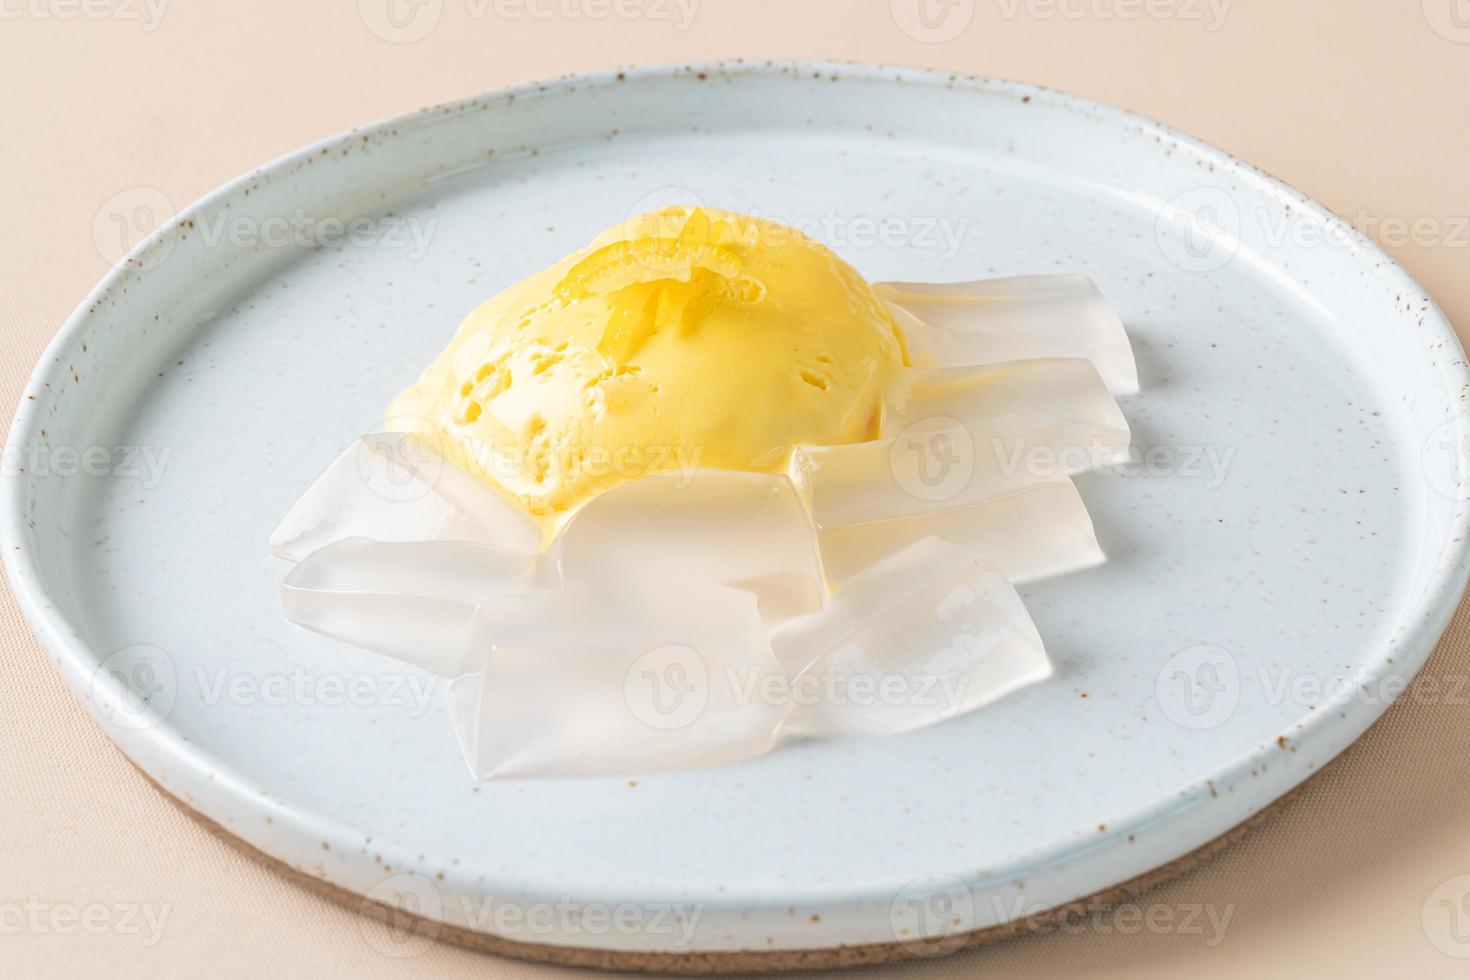 yuzu gelato all'arancia con budino di gelatina sul piatto foto